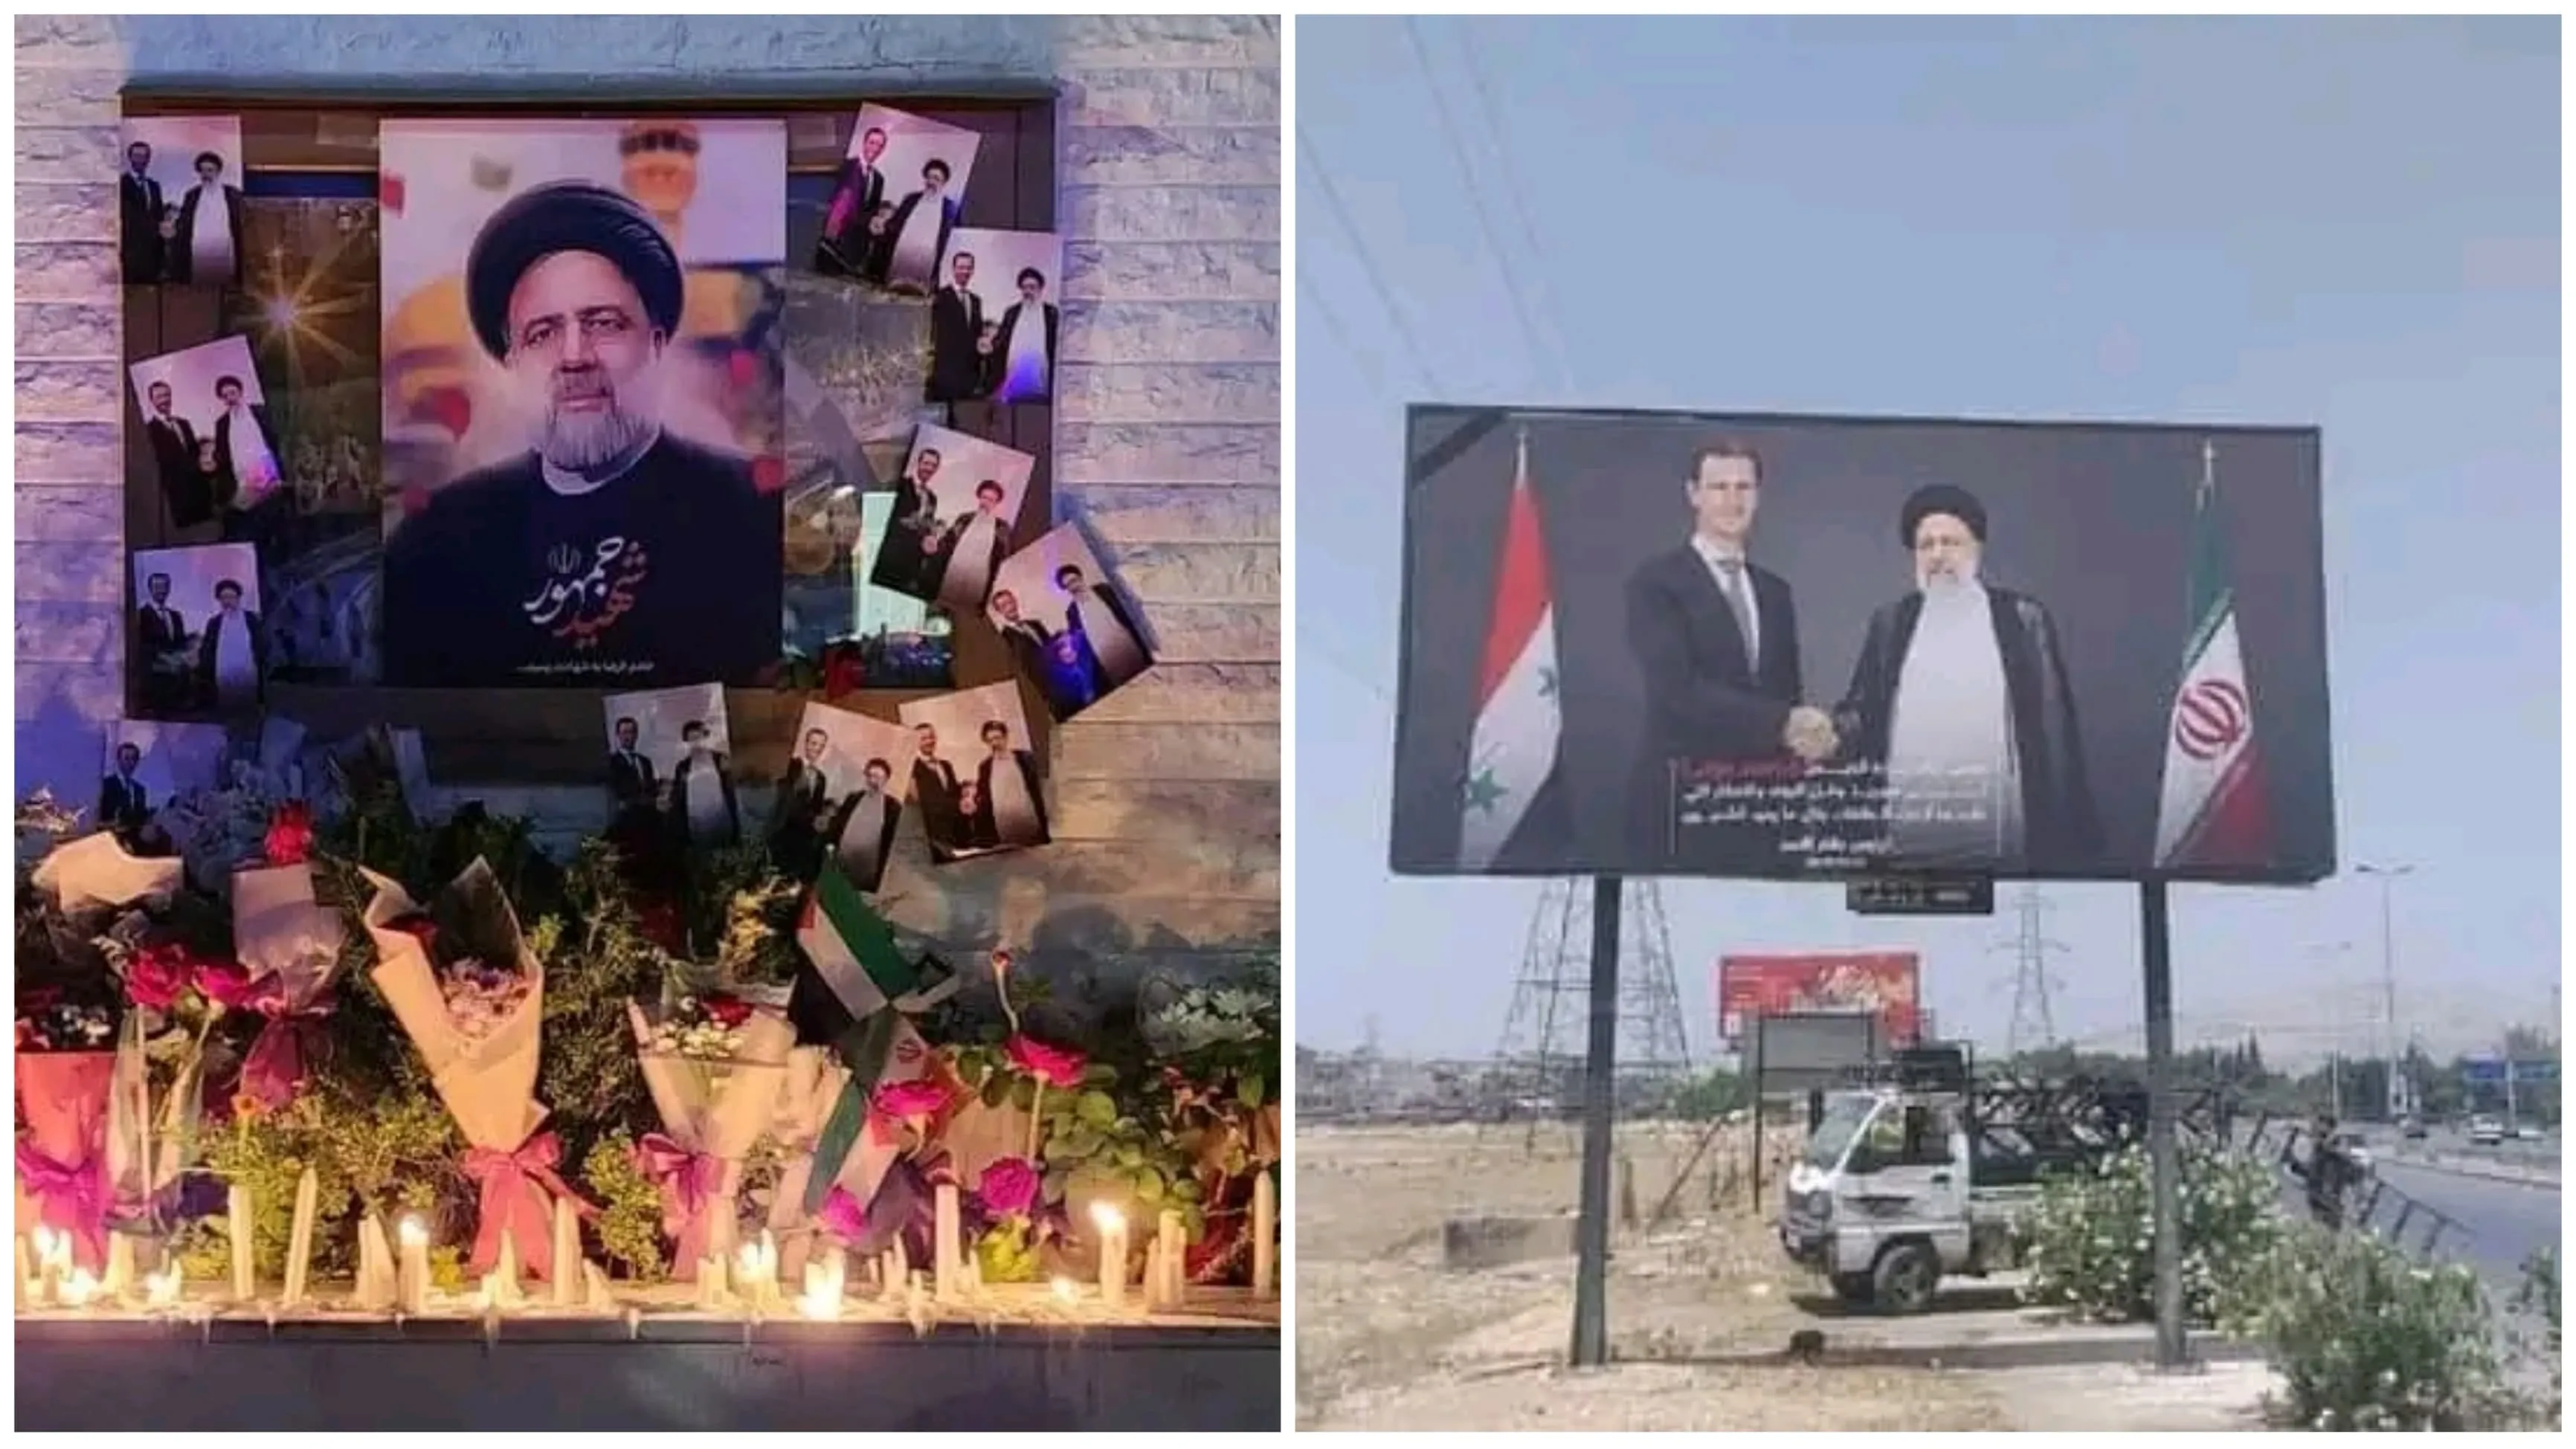 النظام يعلن إلغاء احتفالات وأنشطة حزناً على "رئيسي" وتضامناً مع "أسماء"